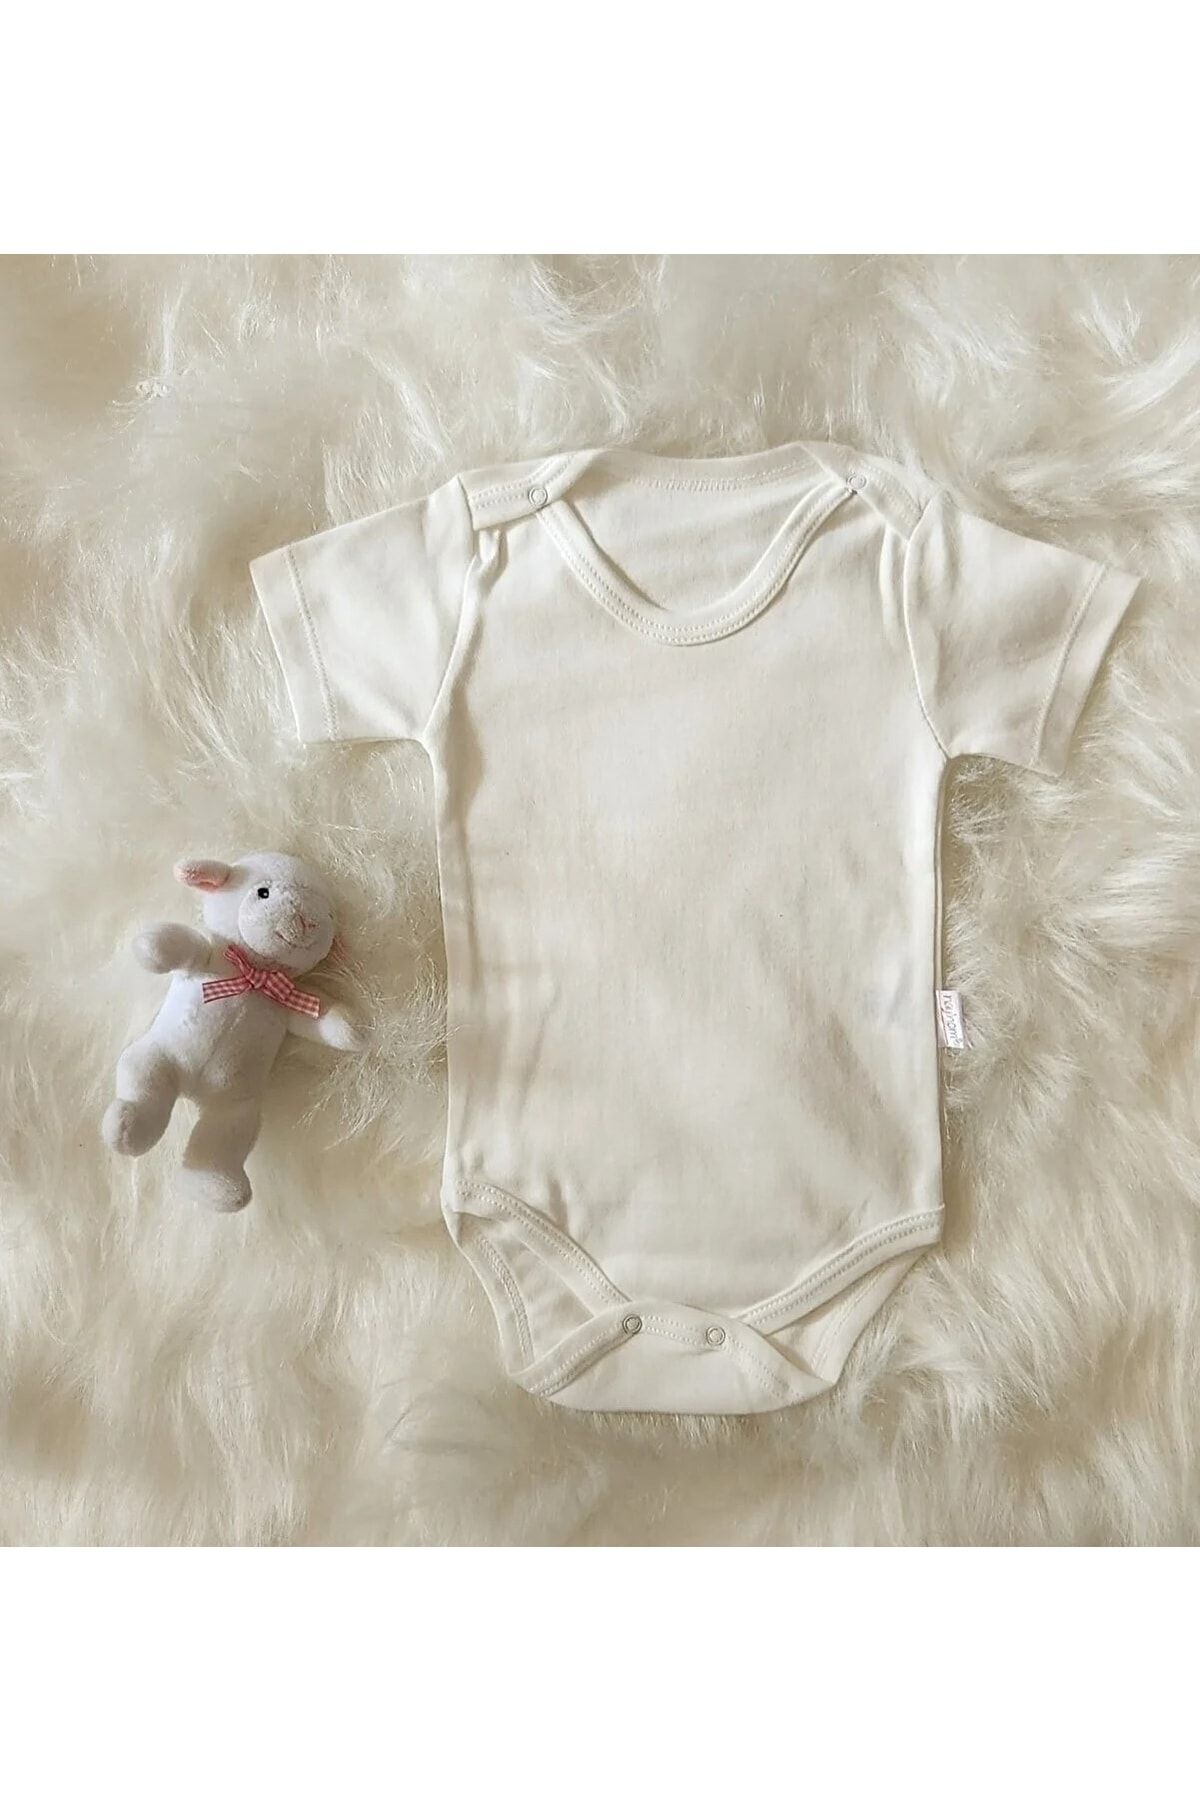 MiniStand Unisex Kısa Kollu Beyaz Pamuklu Çıtçıtlı Bebek Zıbın